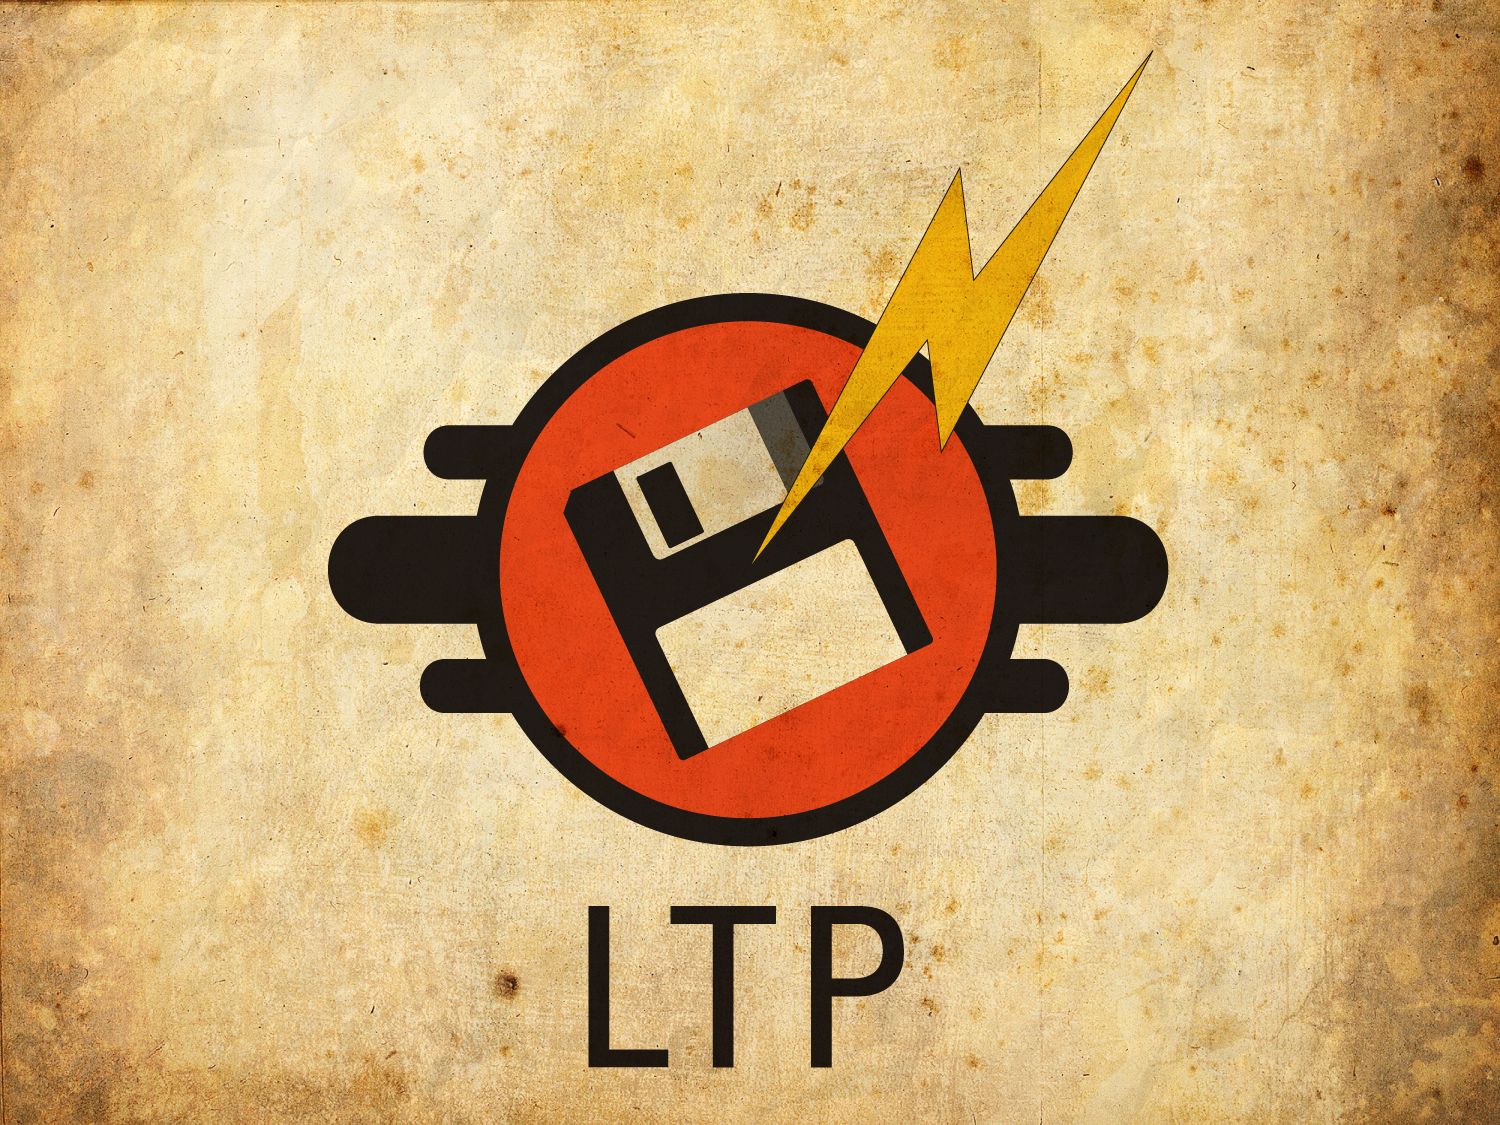 LTP "Zot" Logo